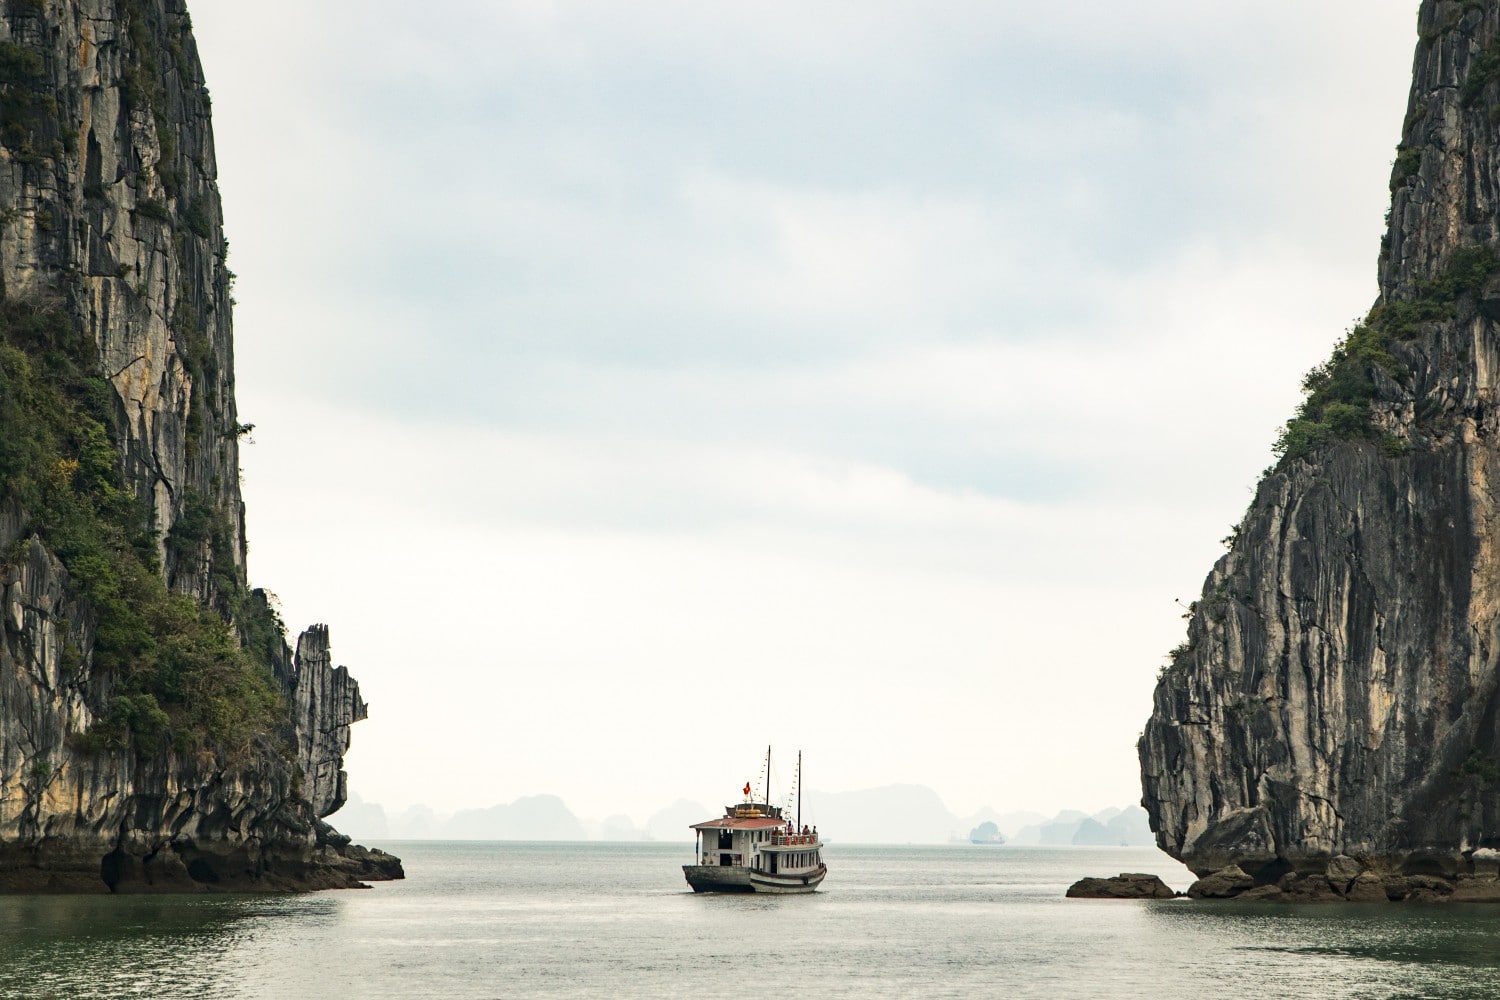 Ha Long Körfezi, Vietnam'da ziyaret edilecek en iyi yerlerden biridir. Unsplash'ta Ryan Waring'in fotoğrafı